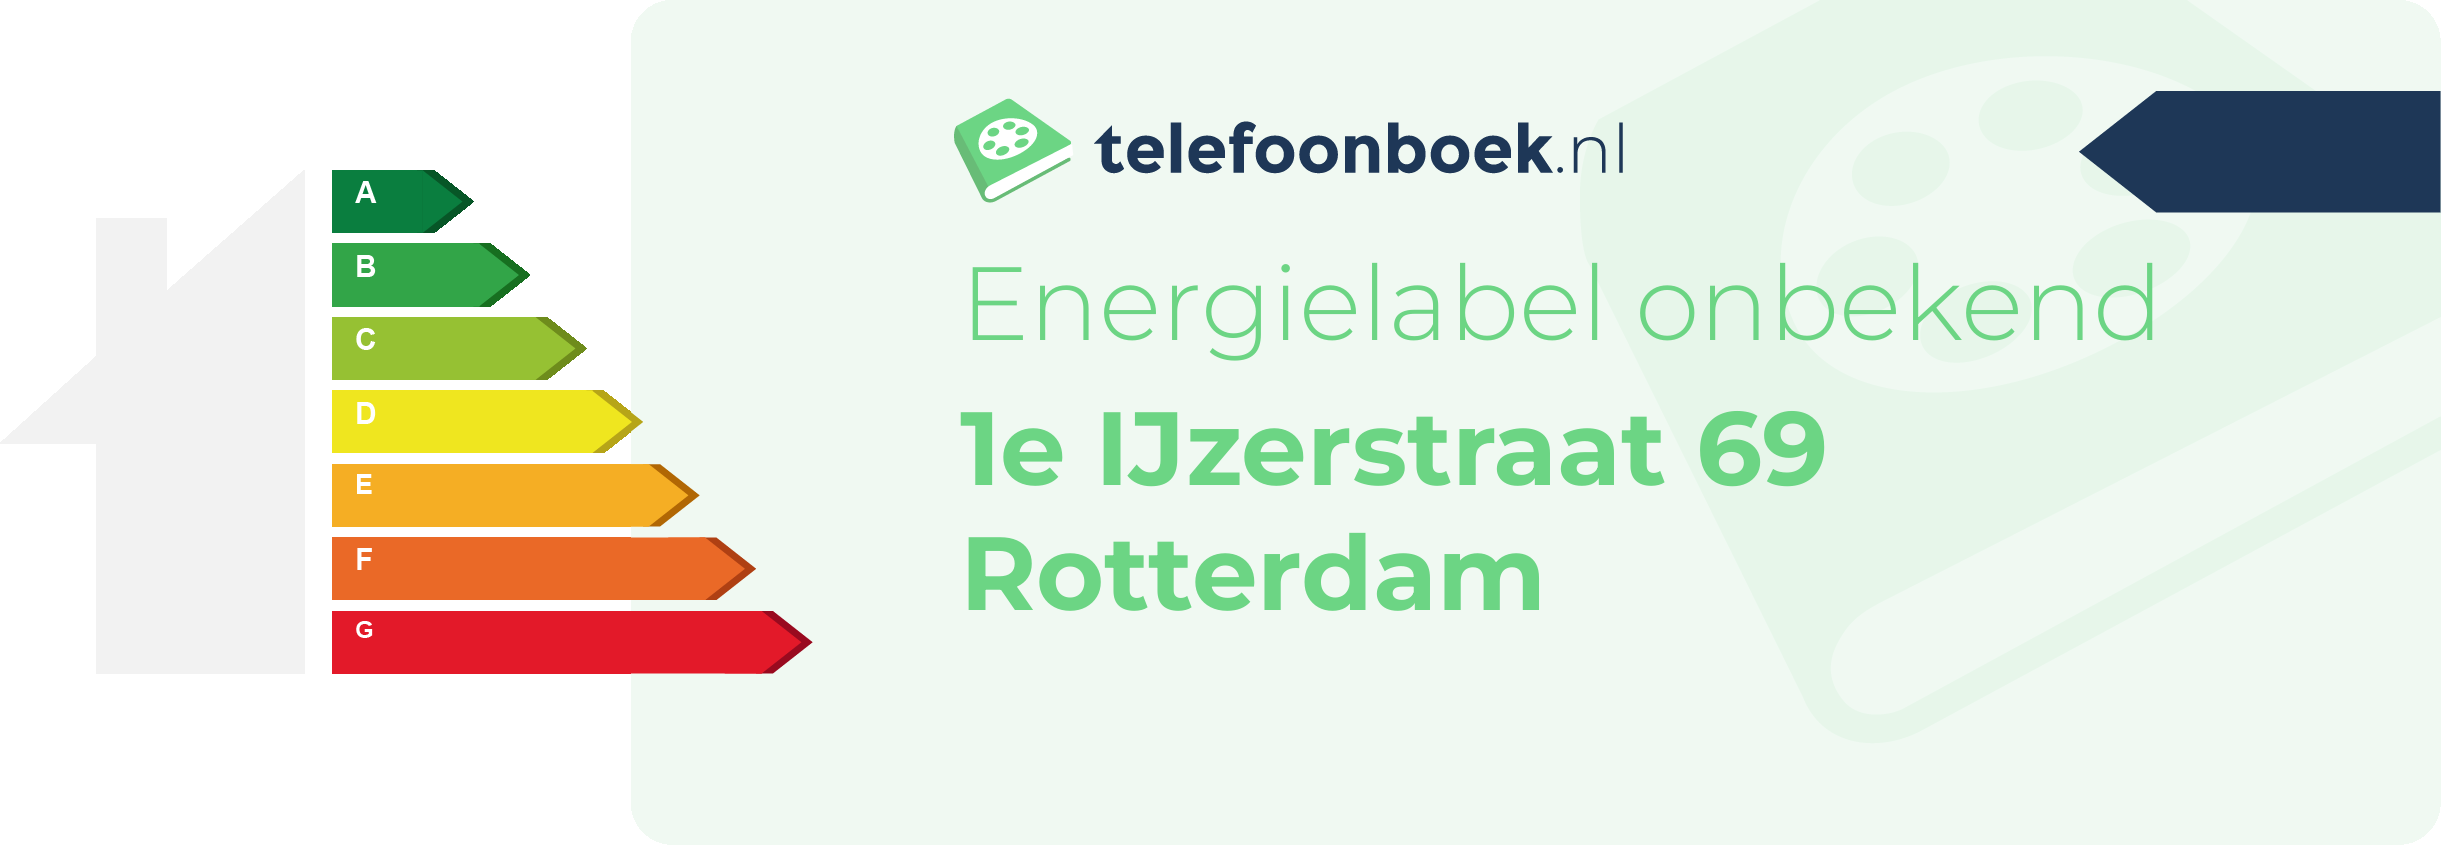 Energielabel 1e IJzerstraat 69 Rotterdam